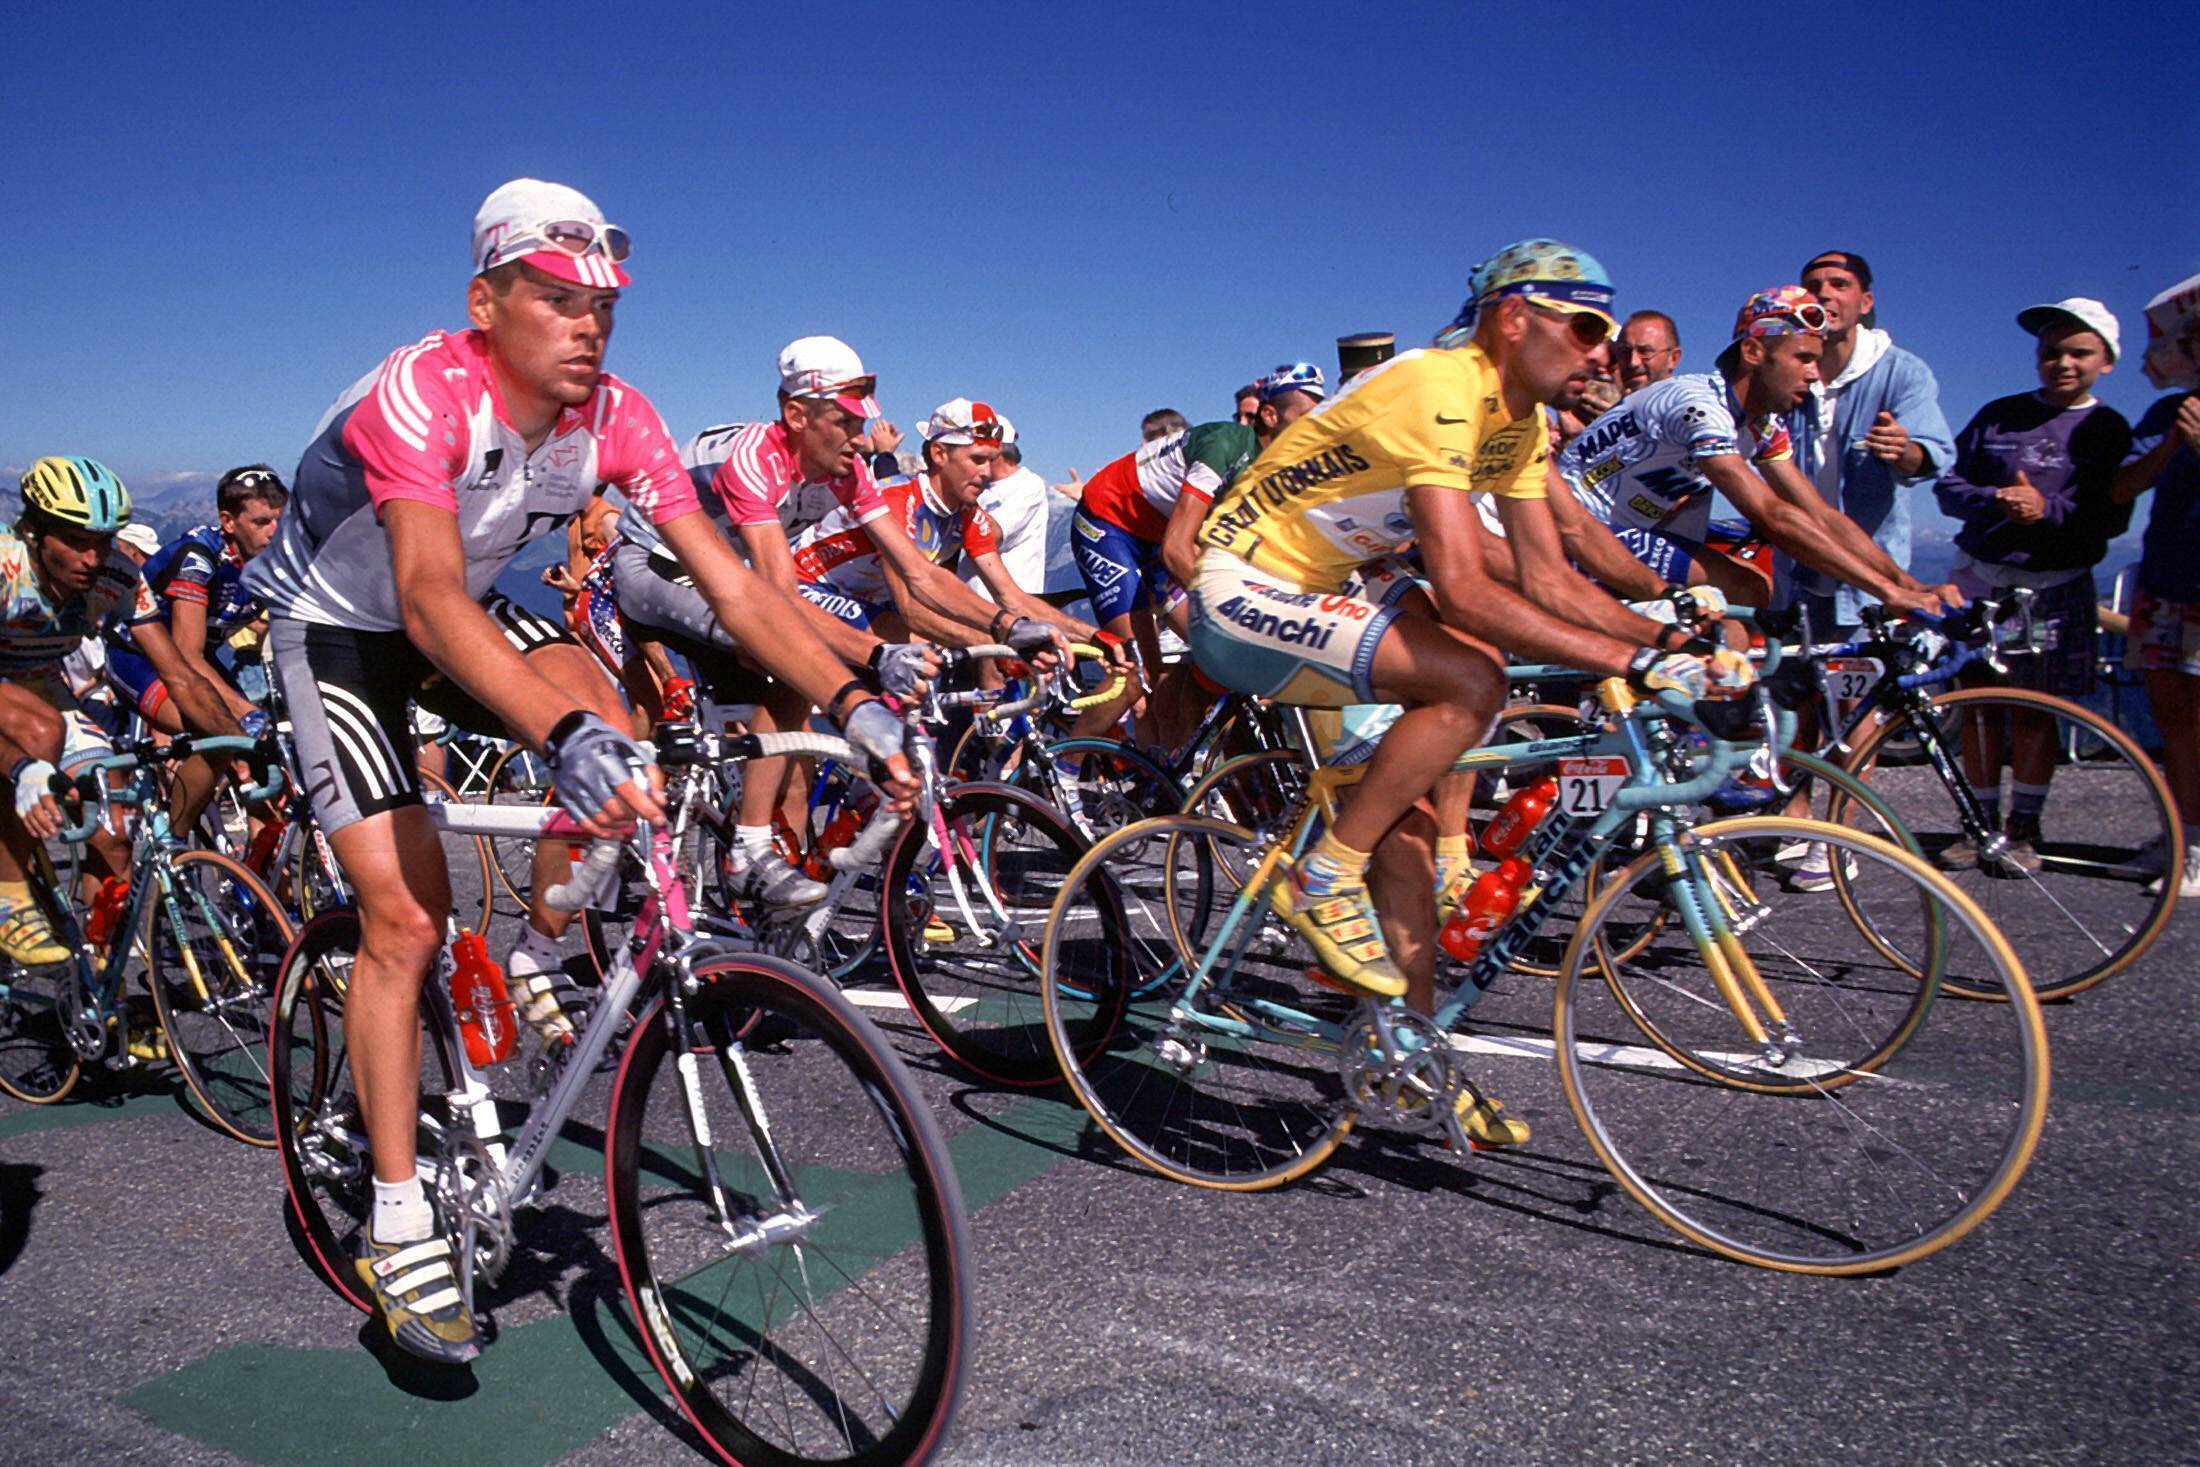 Marco Pantani (r.) und Jan Ullrich bei der Tour de France 1998